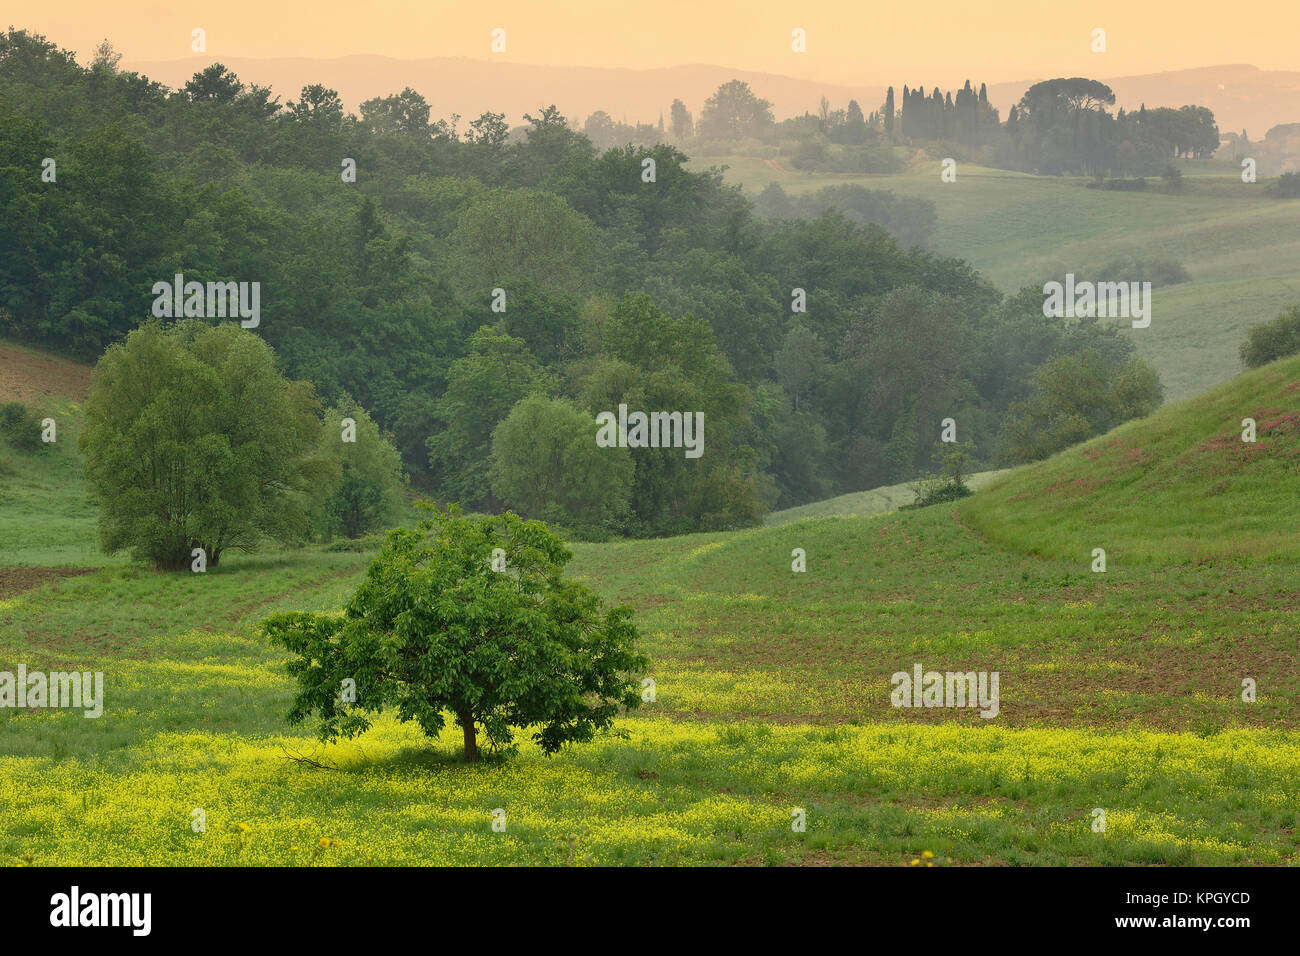 Único árbol en el campo agrícola, Toscana, Italia Foto de stock